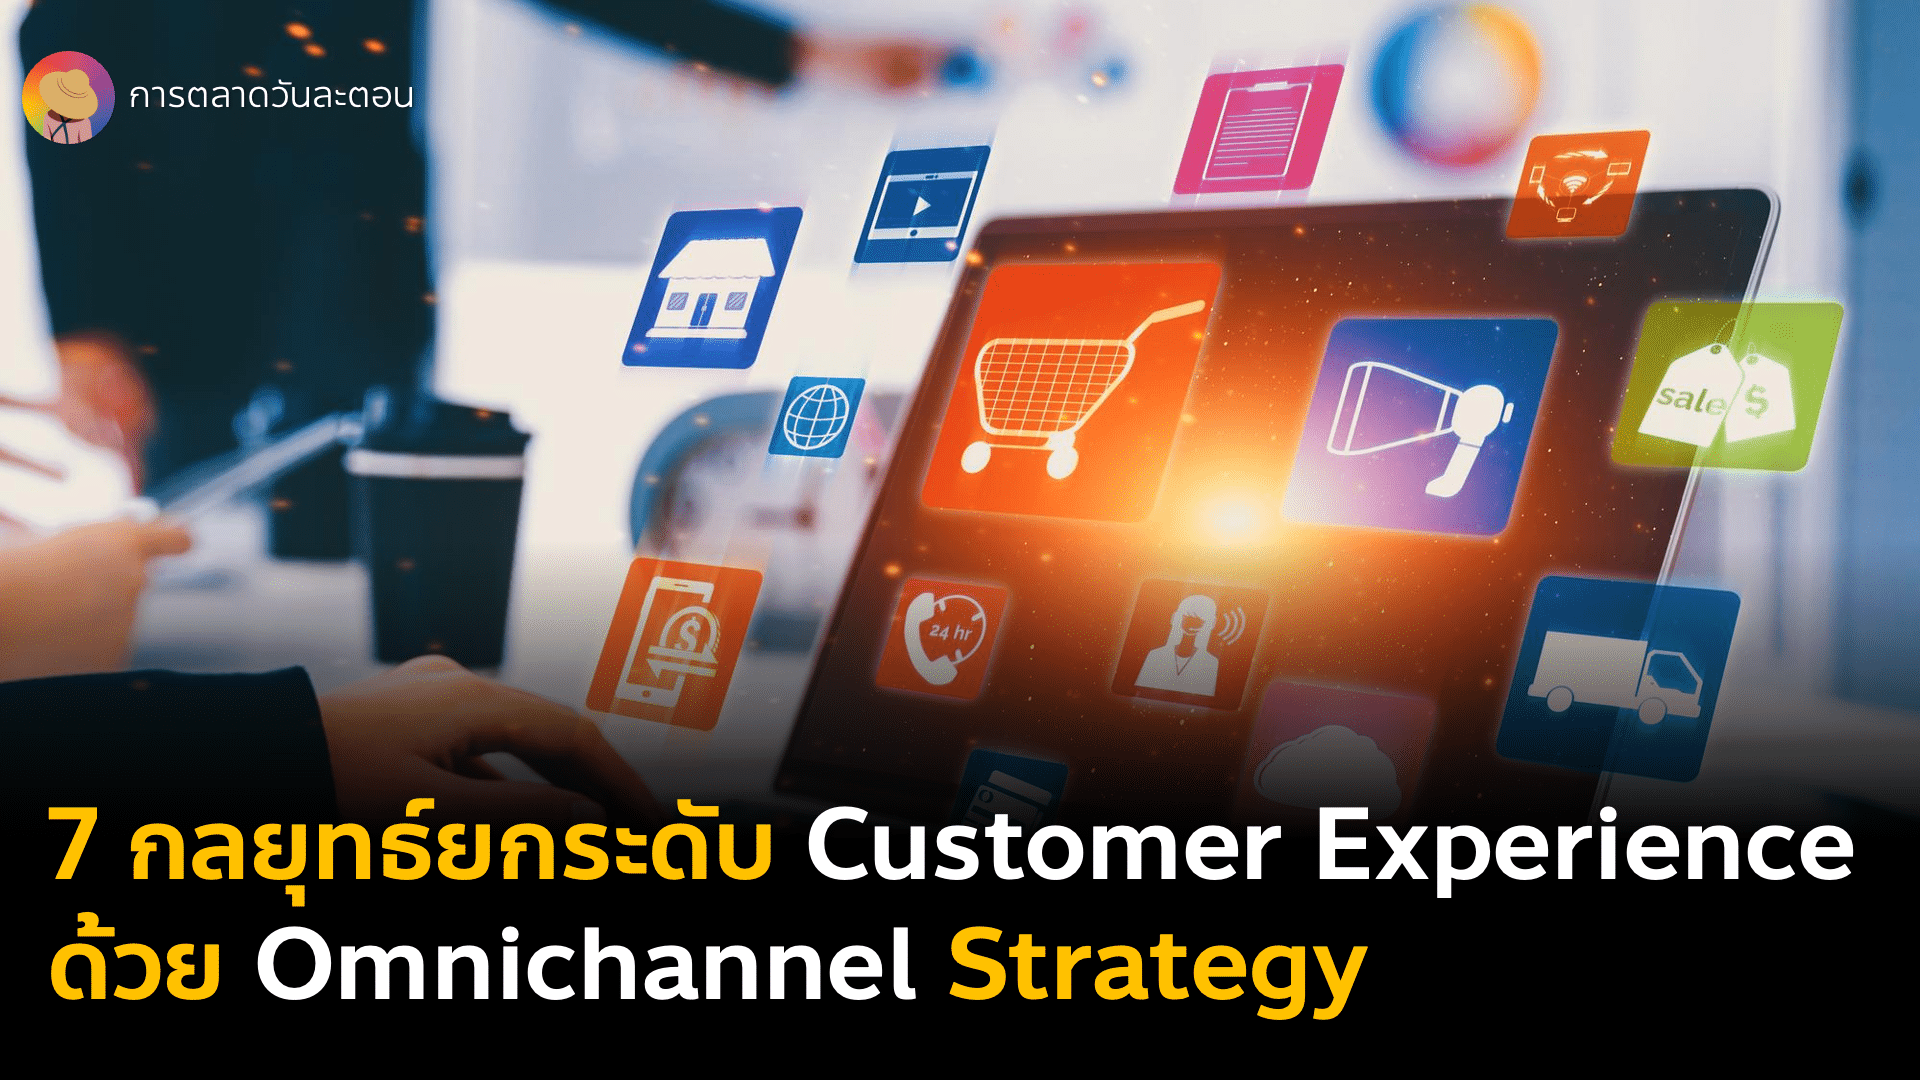 7 กลยุทธ์ยกระดับ Customer Experience ด้วย Omni Channel Marketing จาก Choco FastHelp โดย ChoroCRM รวบเก็บทุกแชทไว้ในช่องทางเดียว